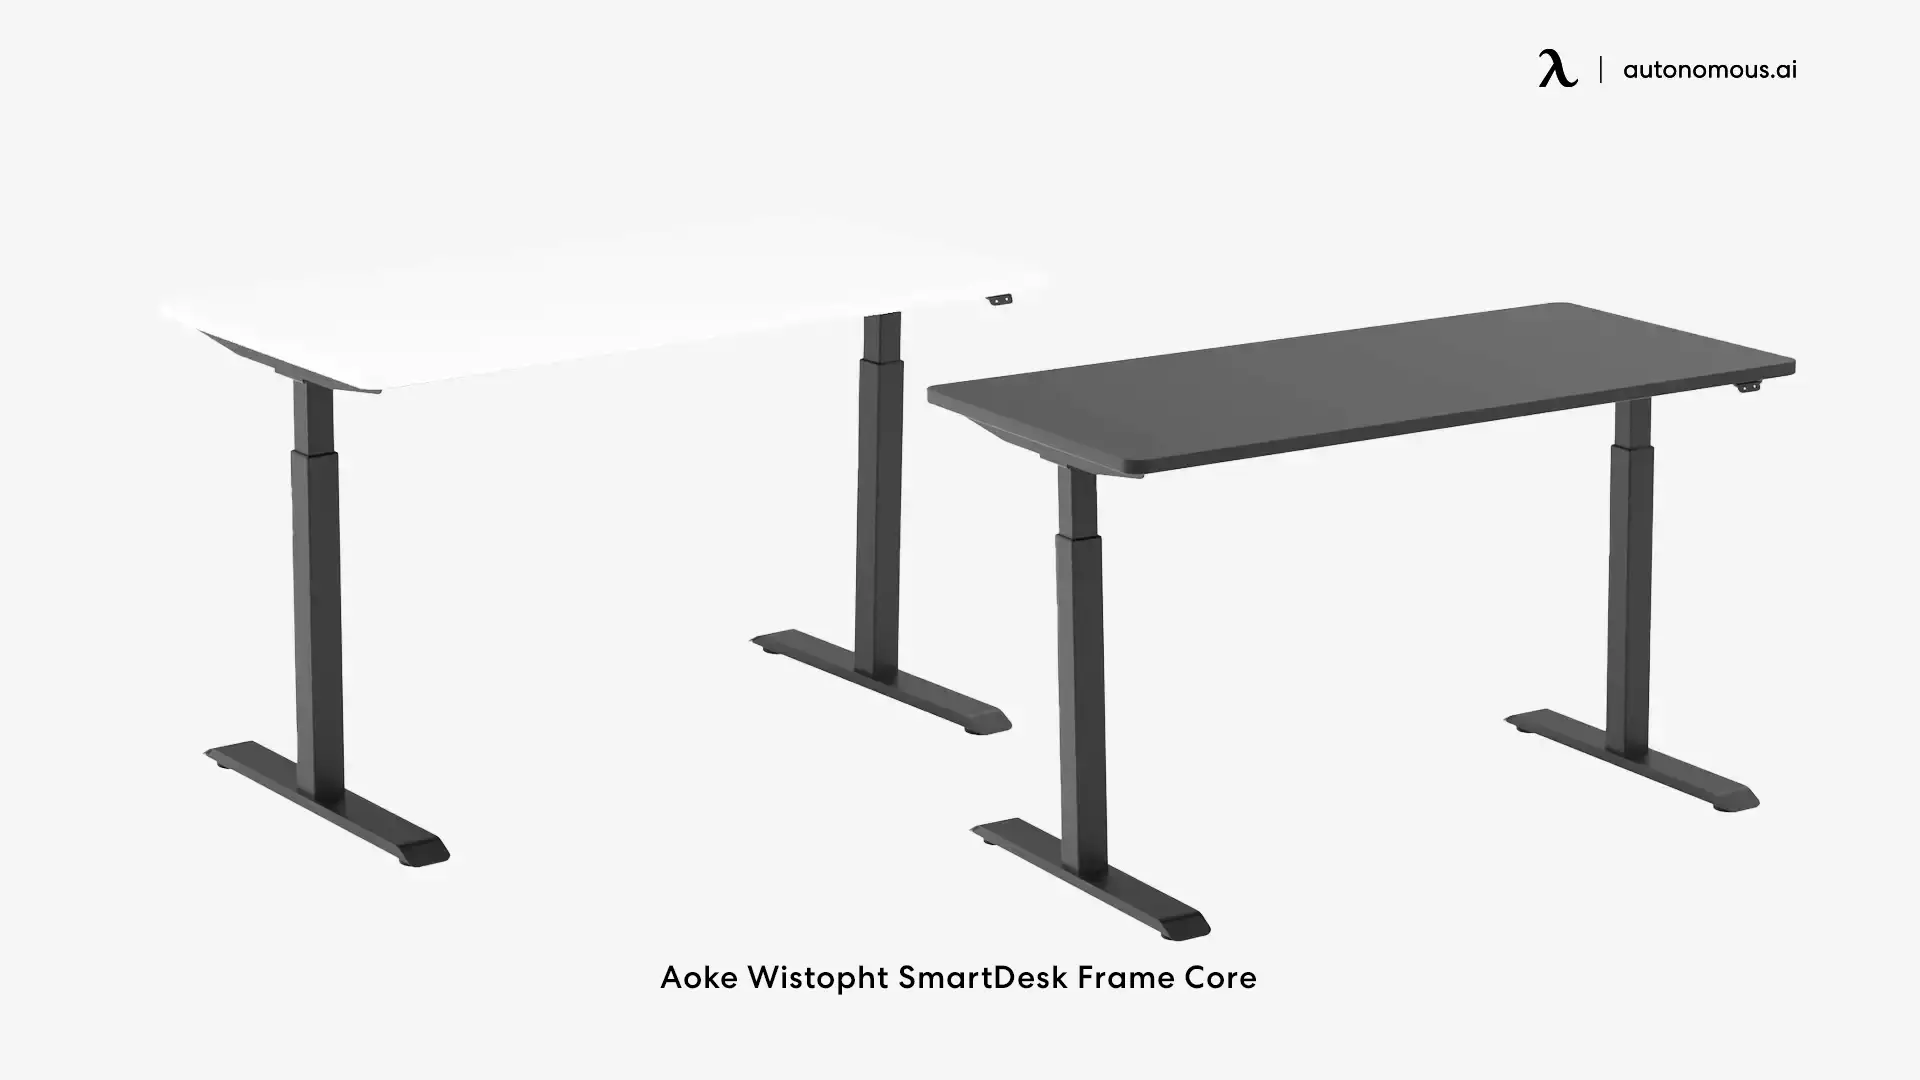 Aoke Wistopht SmartDesk Frame Core